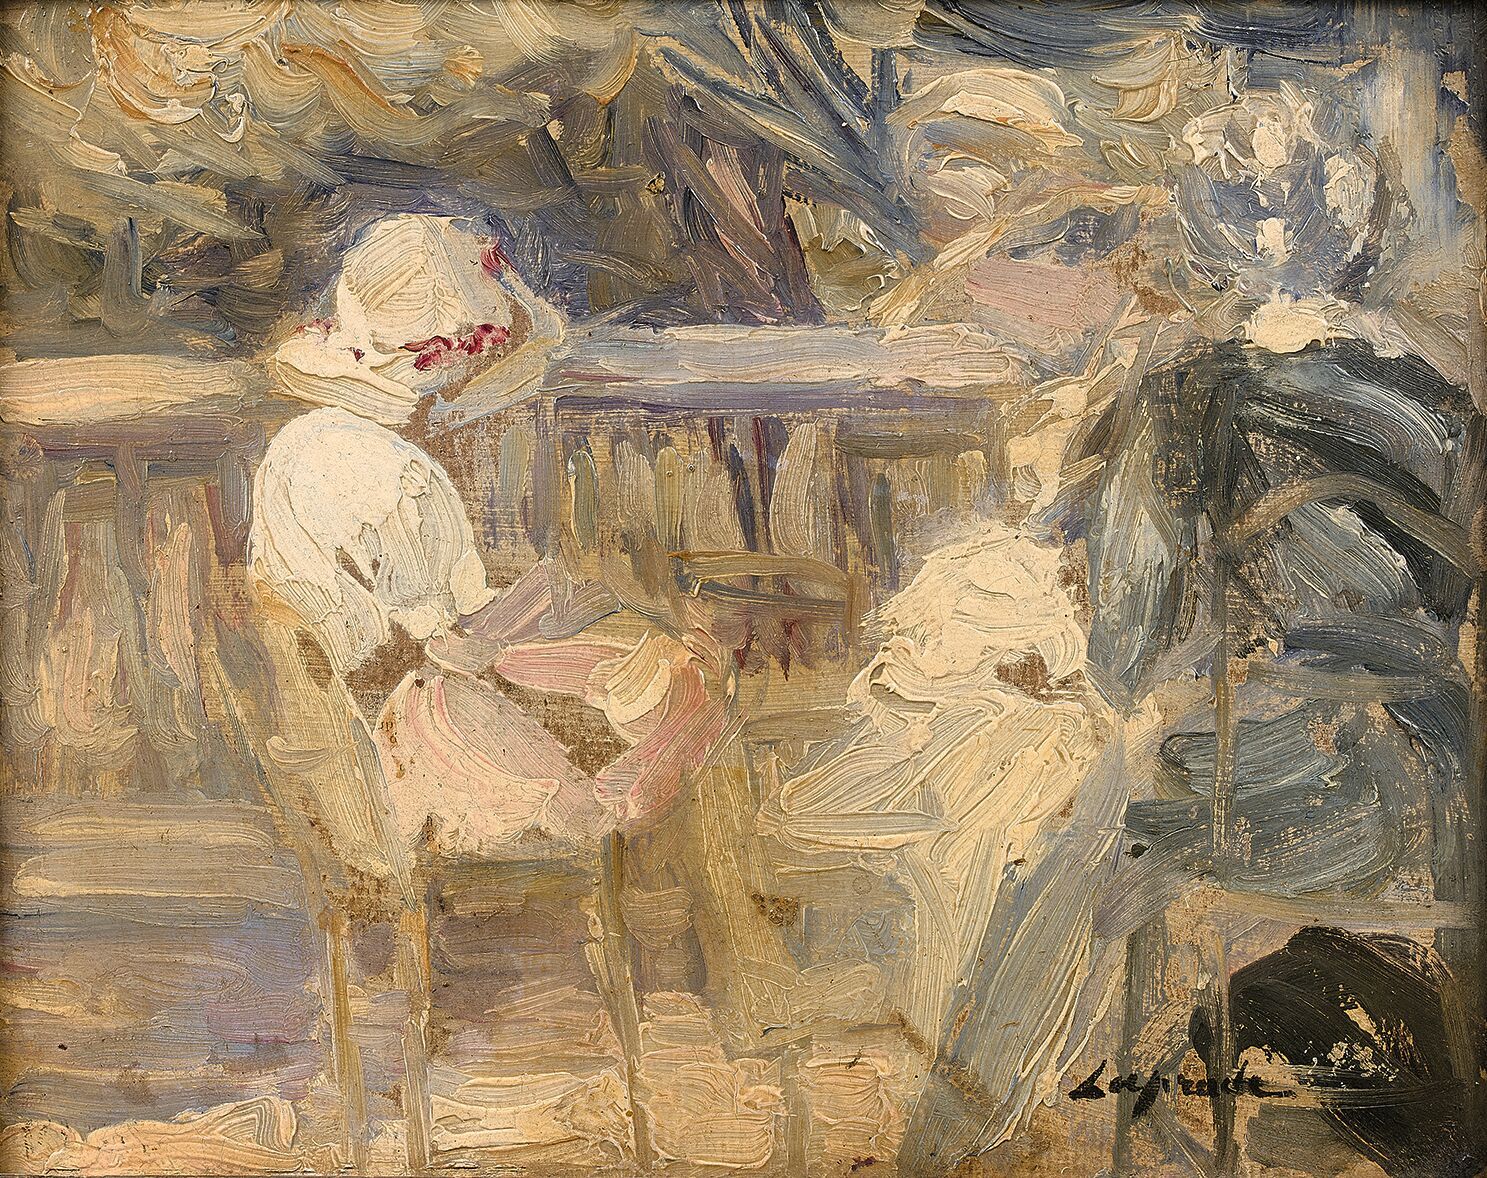 Null 皮埃尔-拉普拉德 (1875-1931)
在花园里
面板油画，右下角有签名。
19.5 x 25 cm